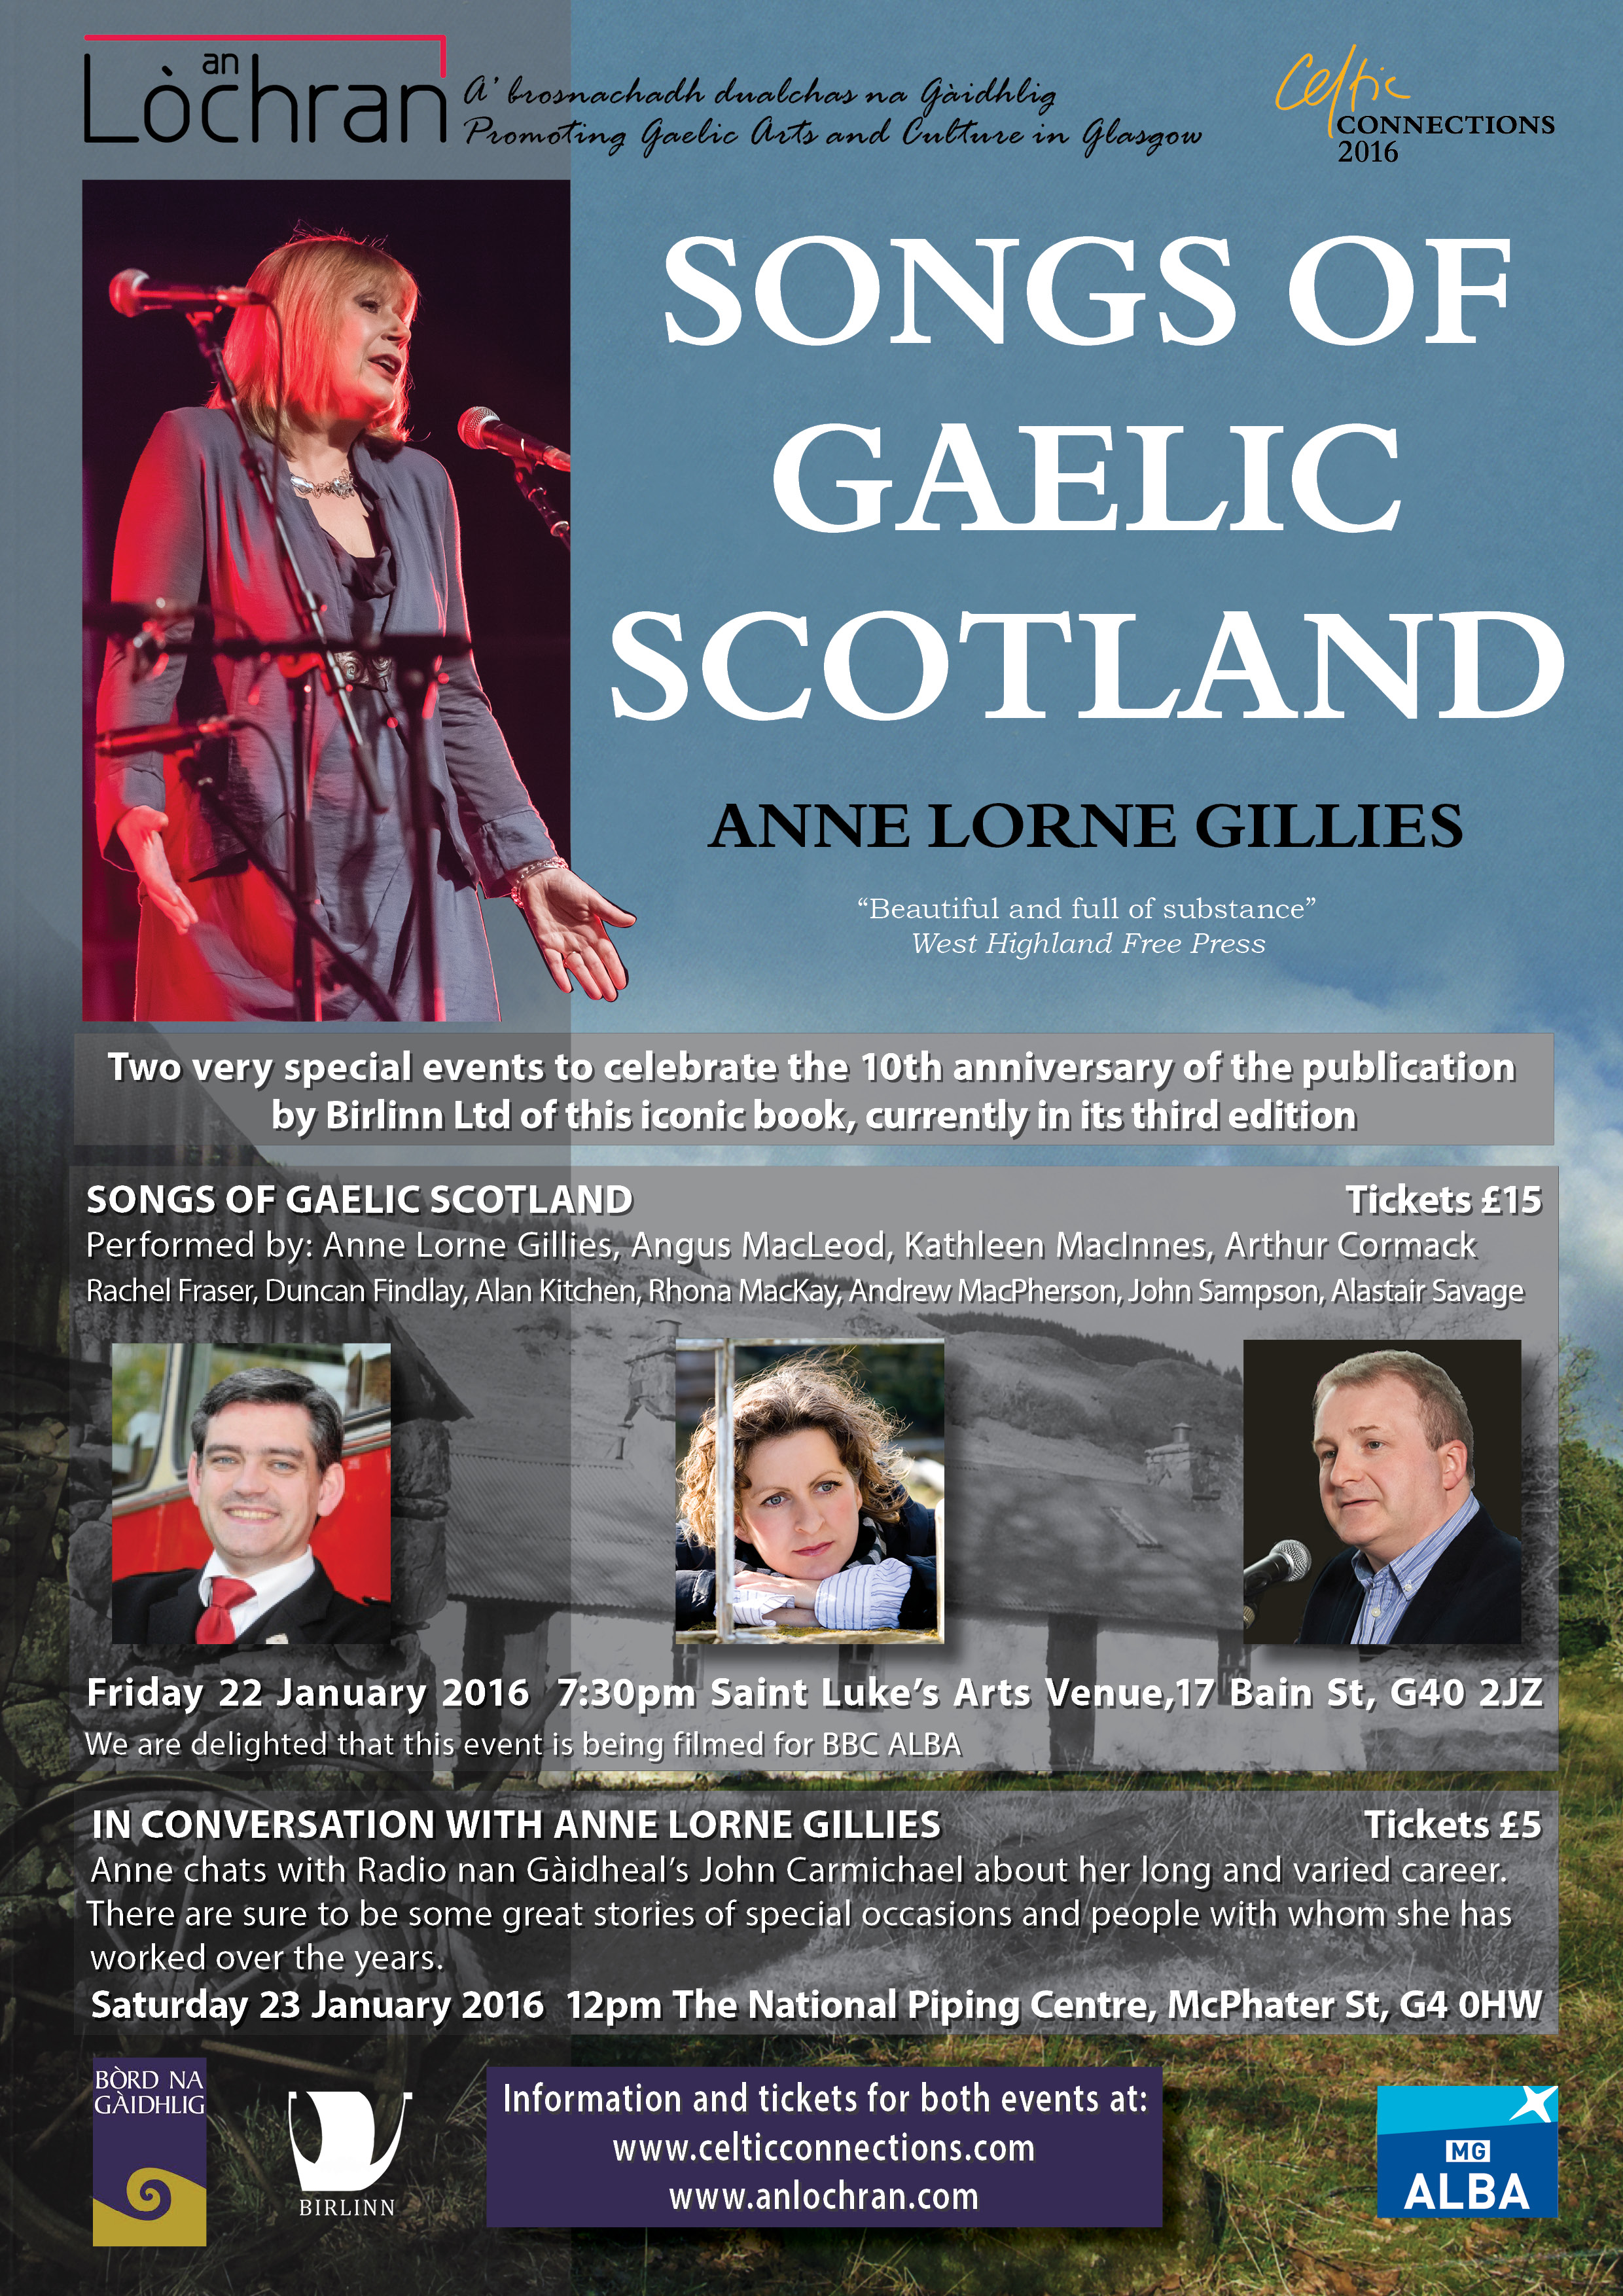 SONGS OF GAELIC SCOTLAND